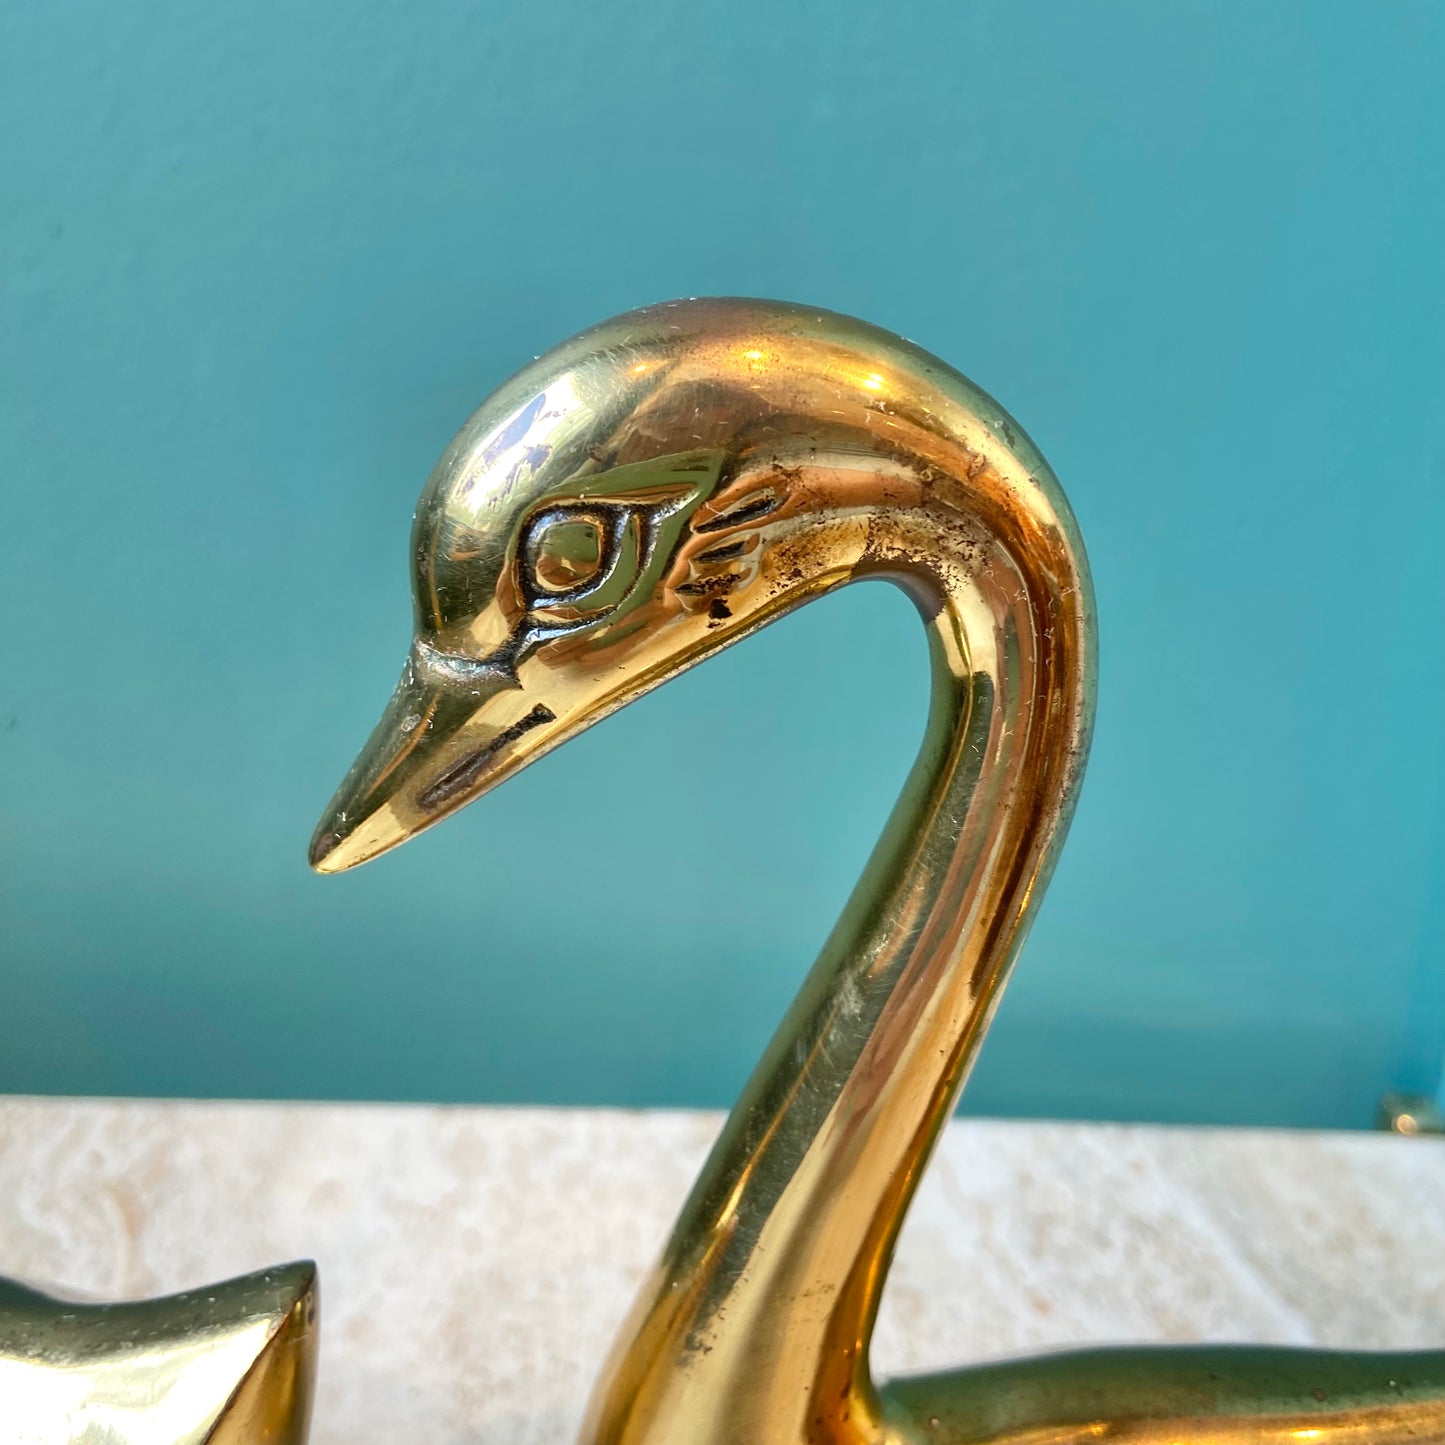 Pair of Vintage Brass Swan Statues